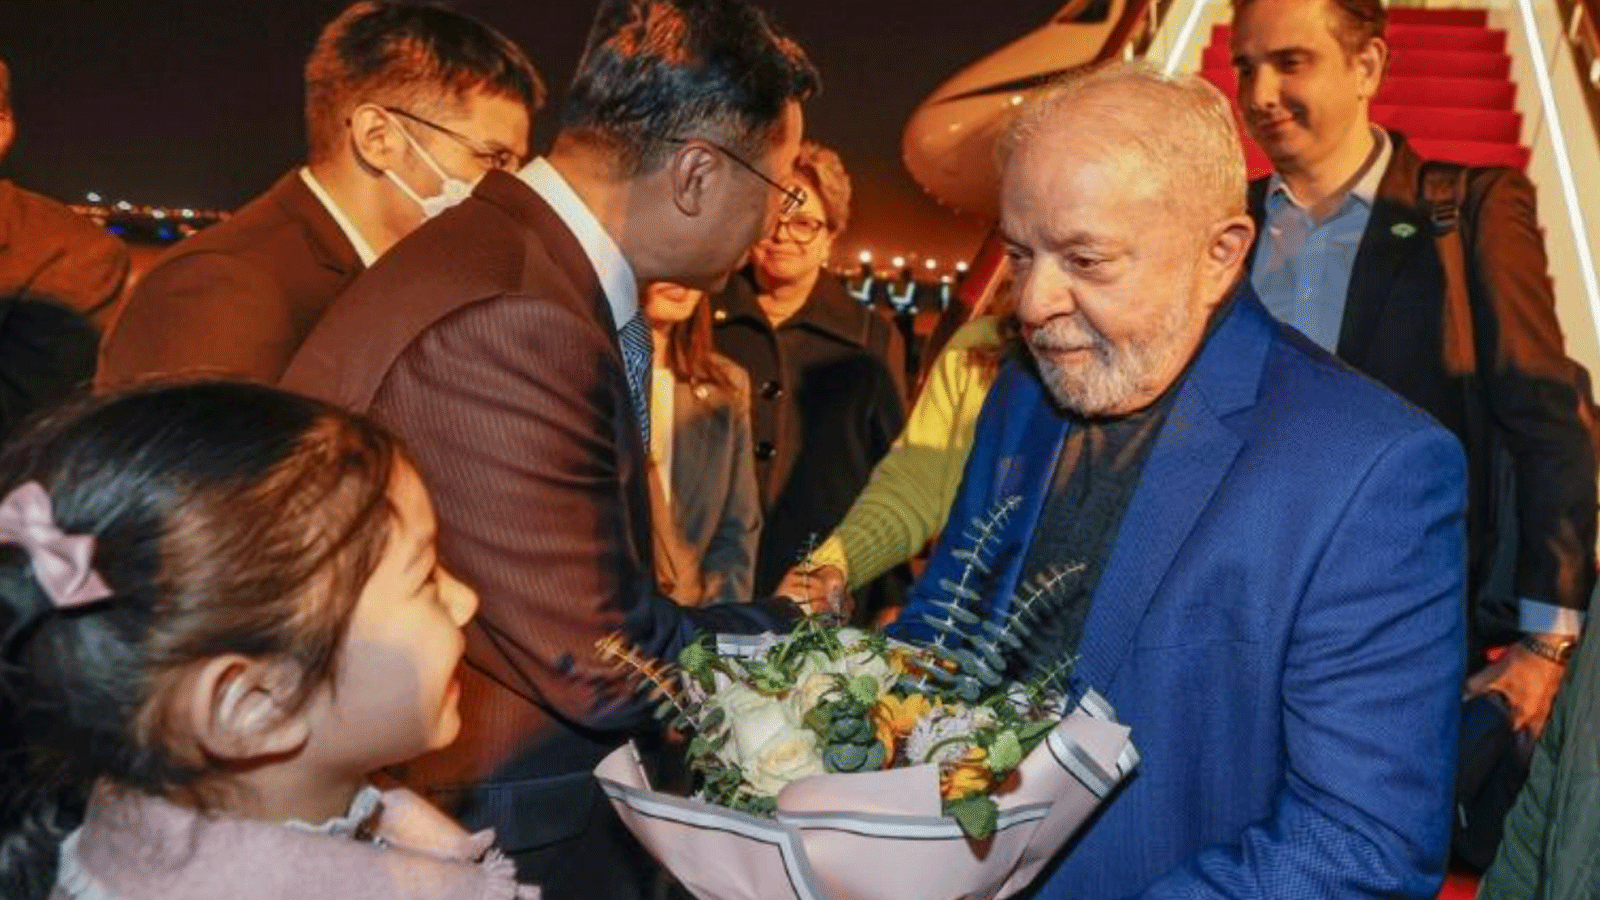 الرئيس البرازيلي لويس إيناسيو لولا دا سيلفا يصل إلى مطار شنغهاي في زيارة رسمية للصين في 12 نيسان\ أبريل 2023